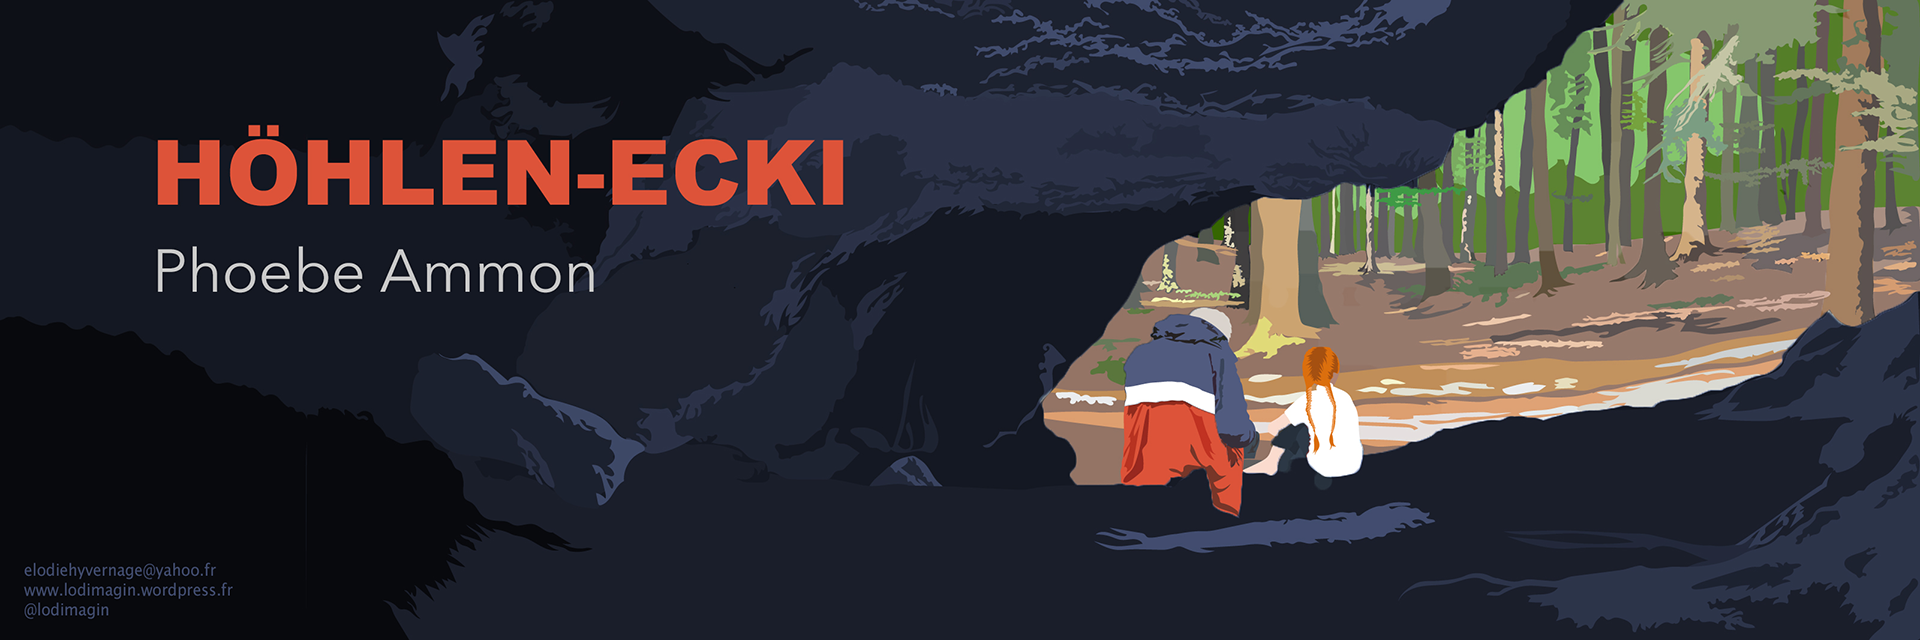 Illustration zum Drehbuch "Höhlen-Ecki" von Elodie Hyvernage